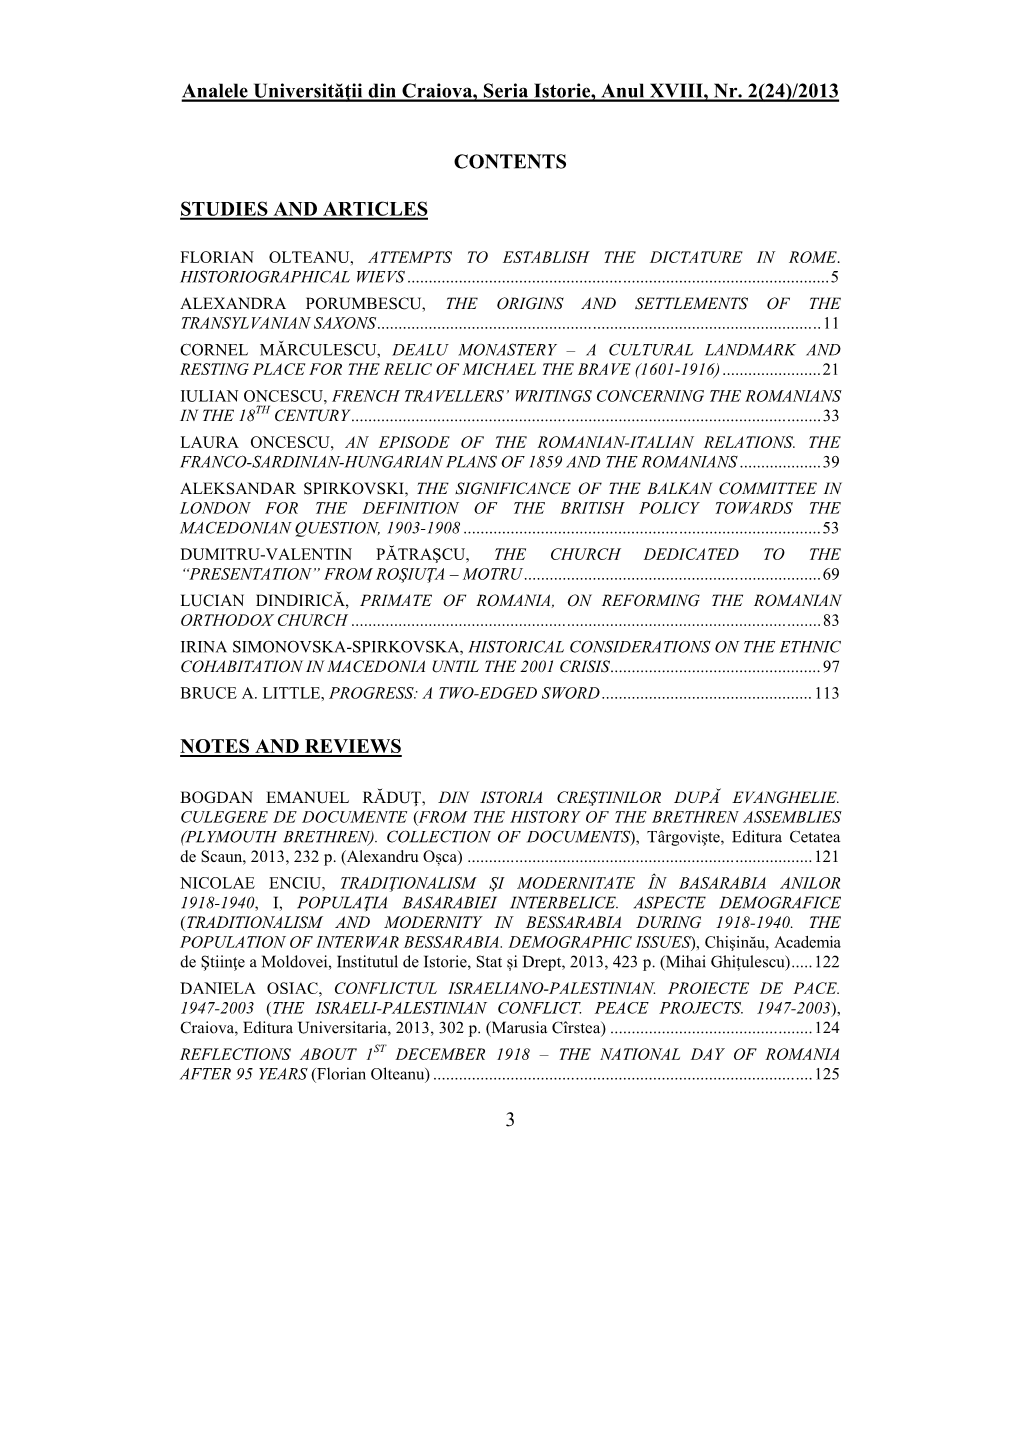 Analele Universităţii Din Craiova, Seria Istorie, Anul XVIII, Nr. 2(24)/2013